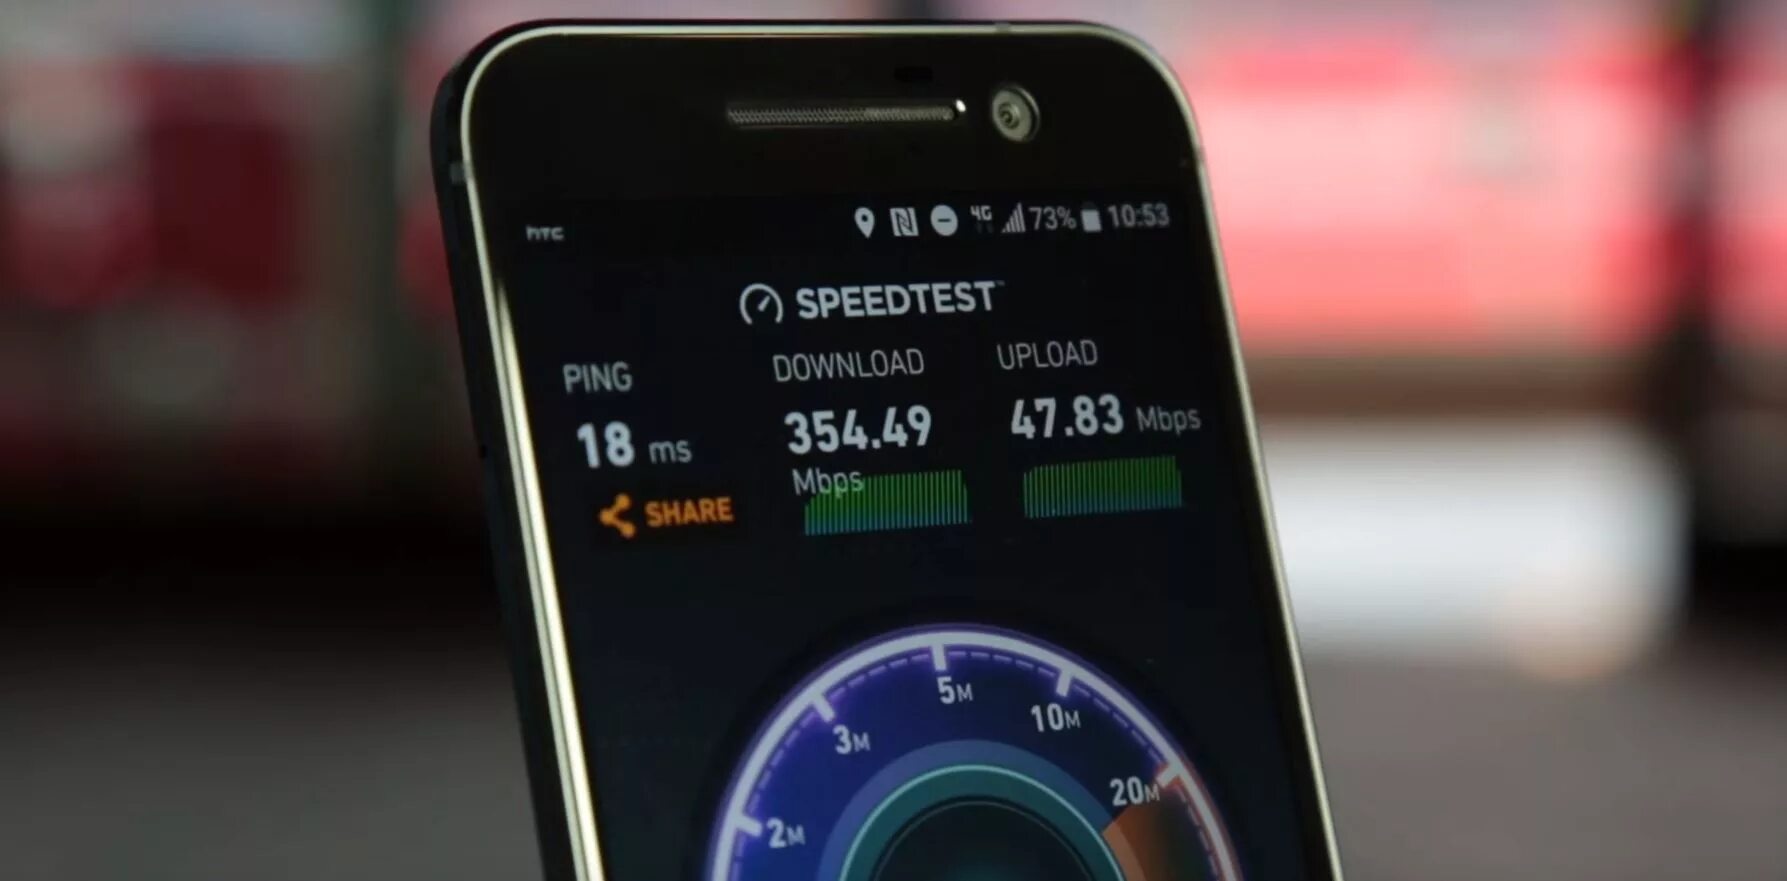 Сотовый 4g интернет. Скоростной мобильный интернет. Режим 4g+. Частный дом Speedtest.